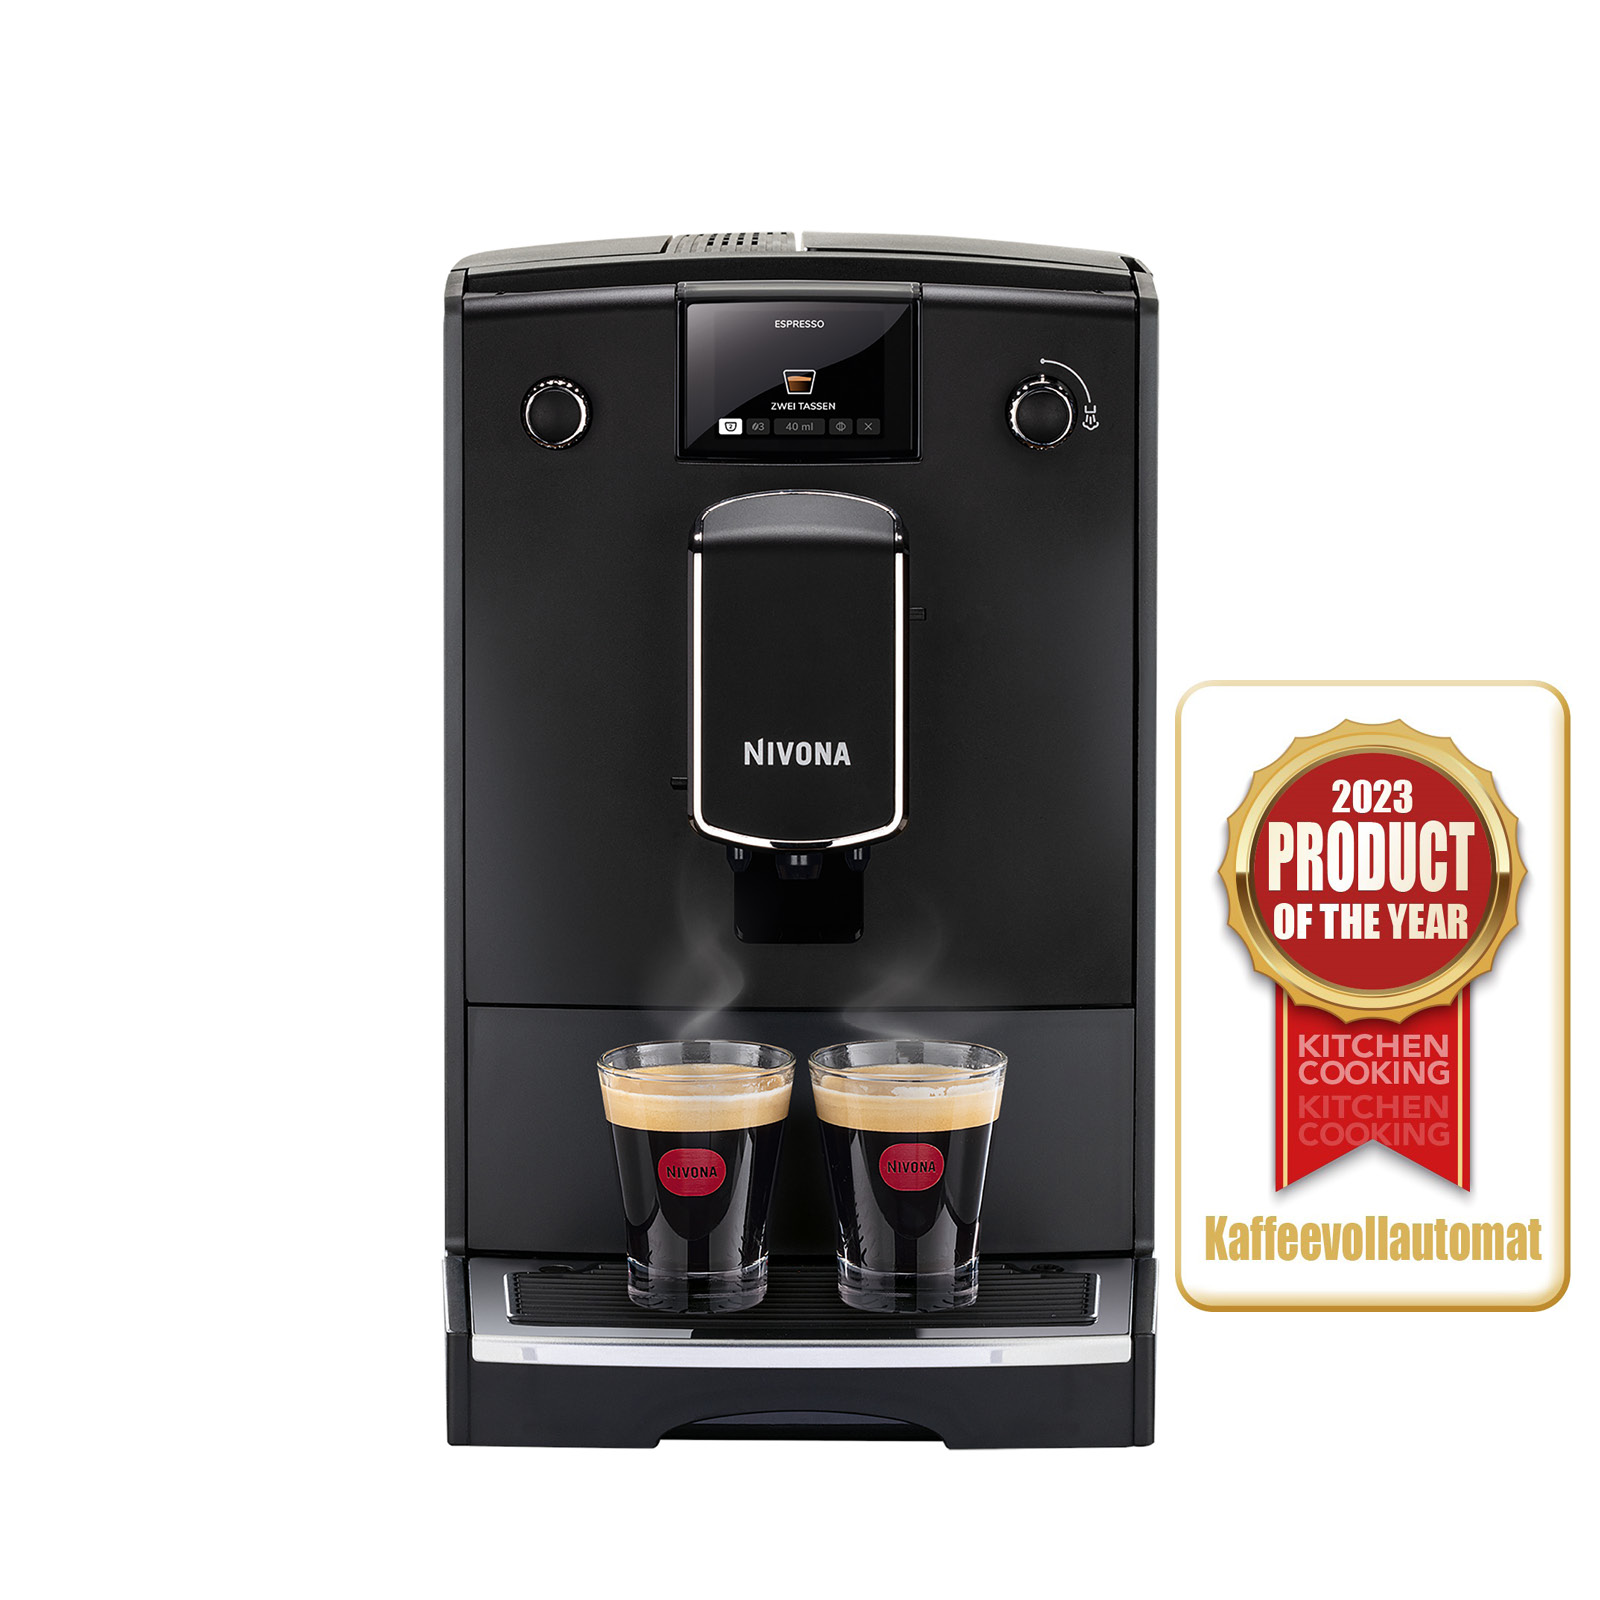 NICR 690 Cafe Romatica fully automatic espresso machine